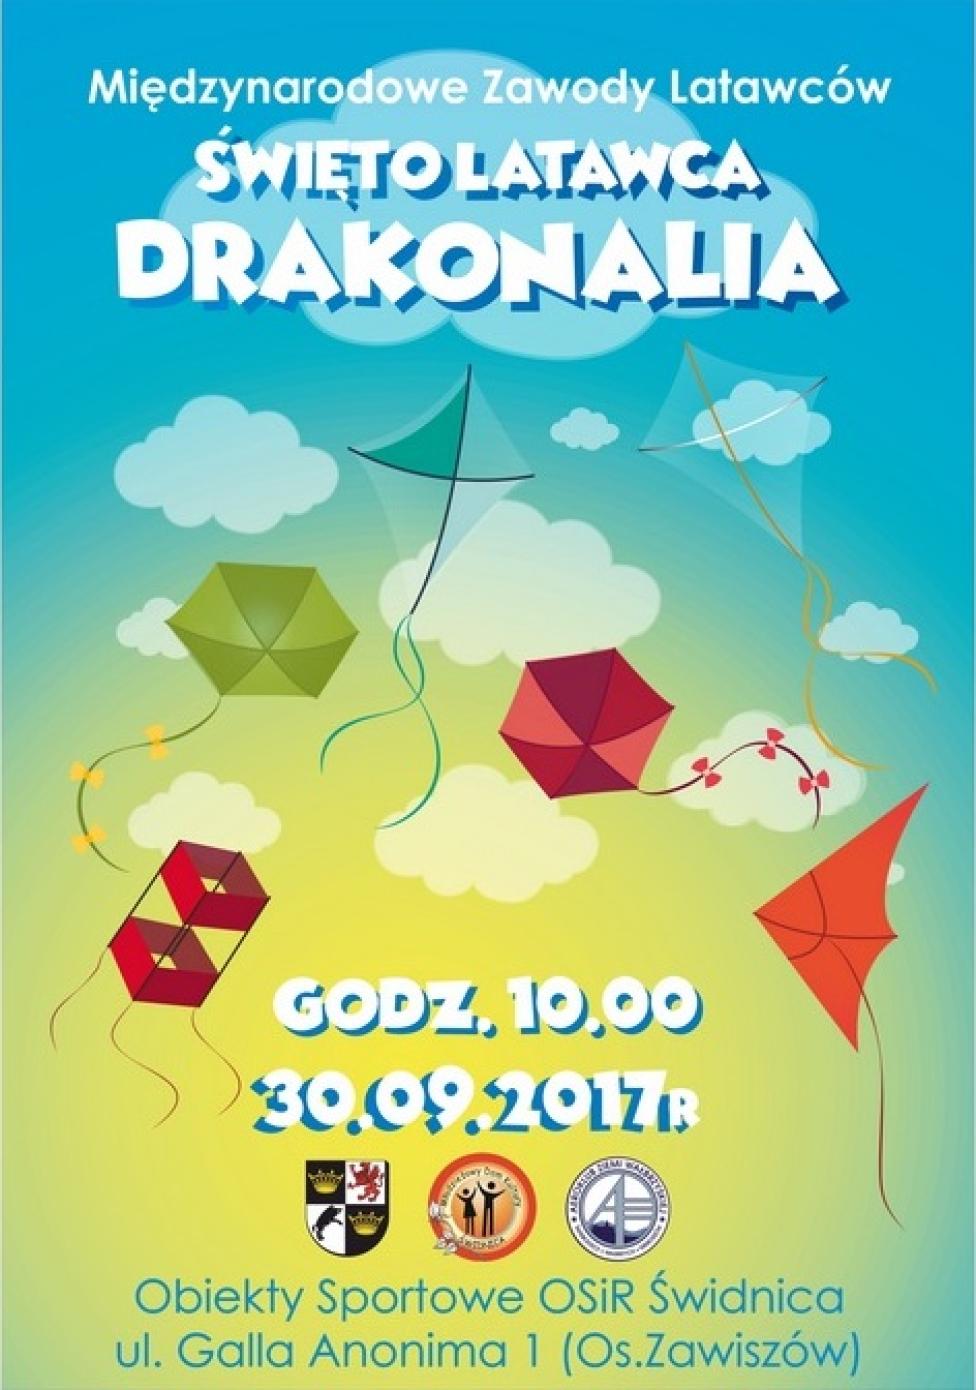 Międzynarodowe Święto Latawca "Drakonalia" w Świdnicy